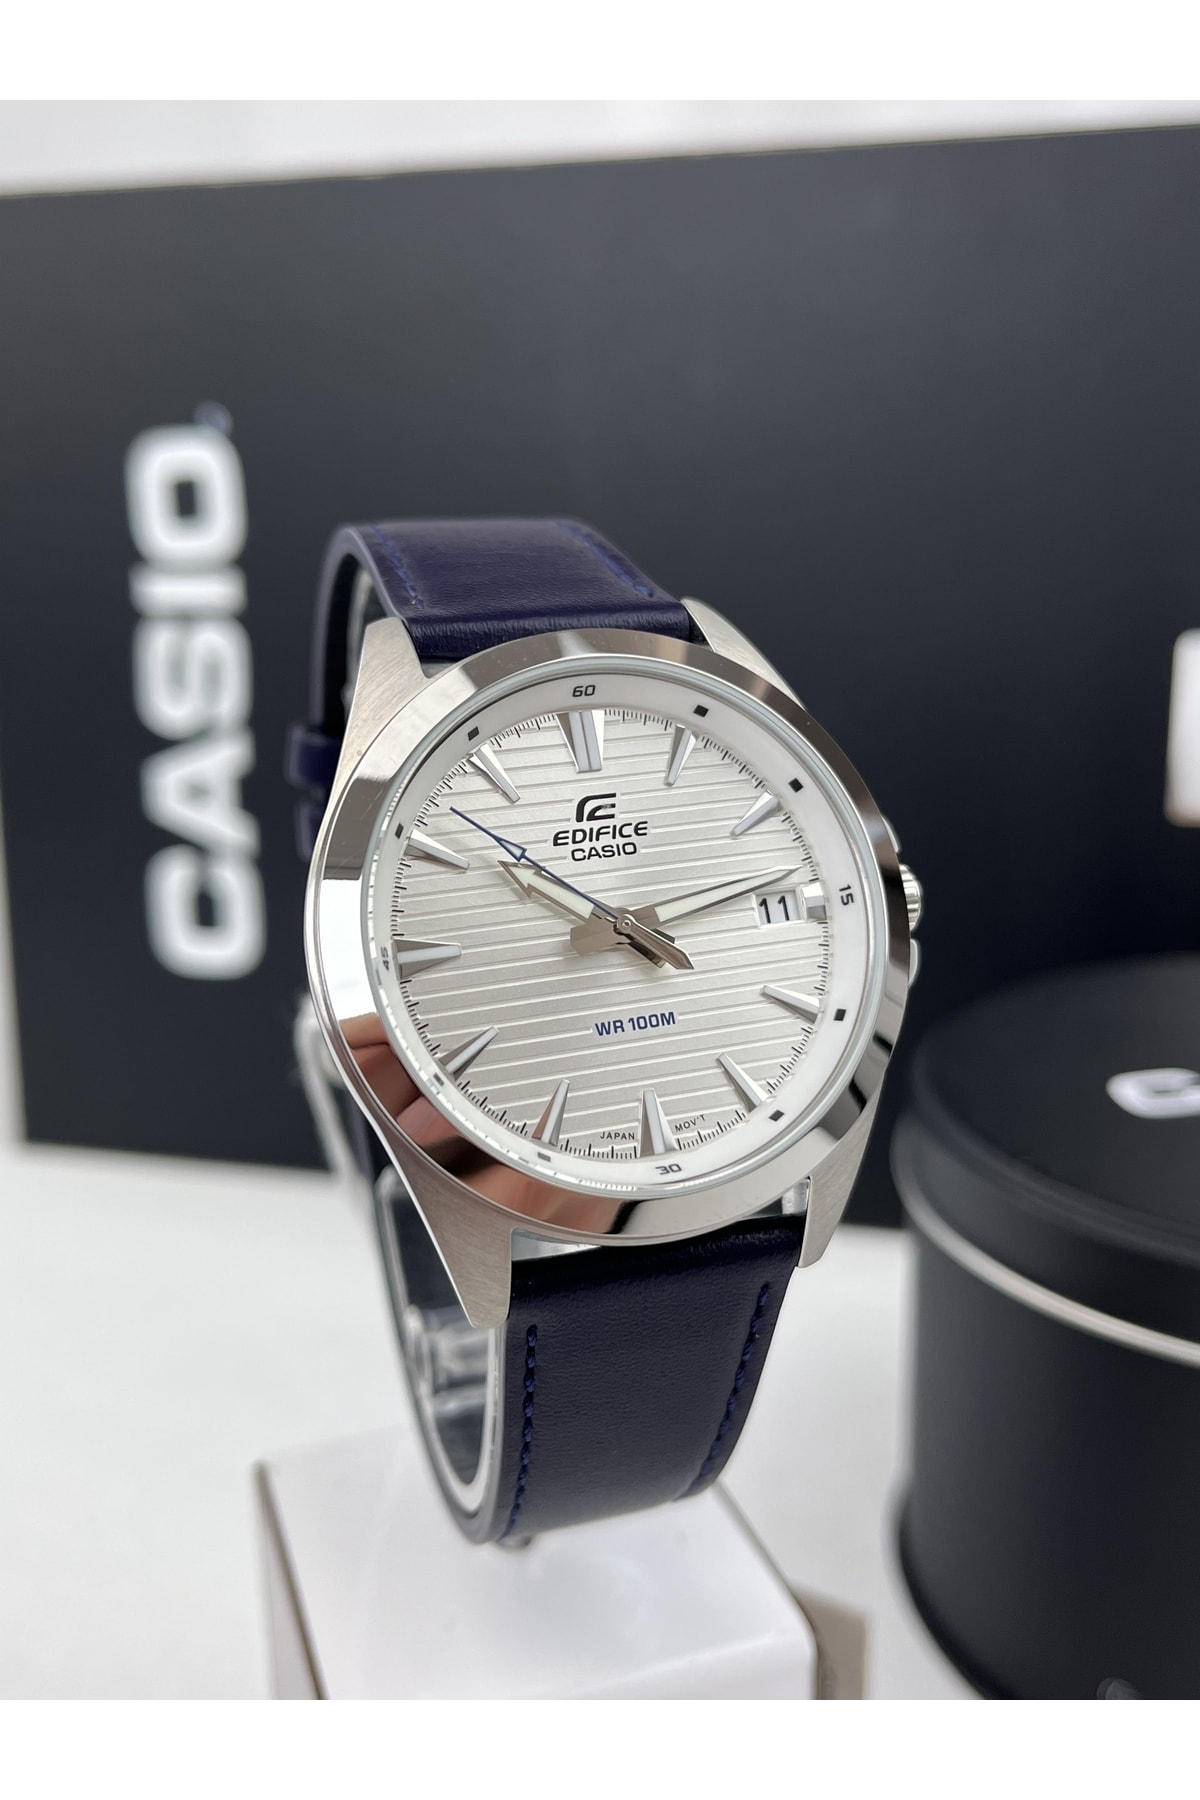 Casio Edıfıce Deri Kayışlı Kol Saati 100mt Su Geçirmez Takvimli